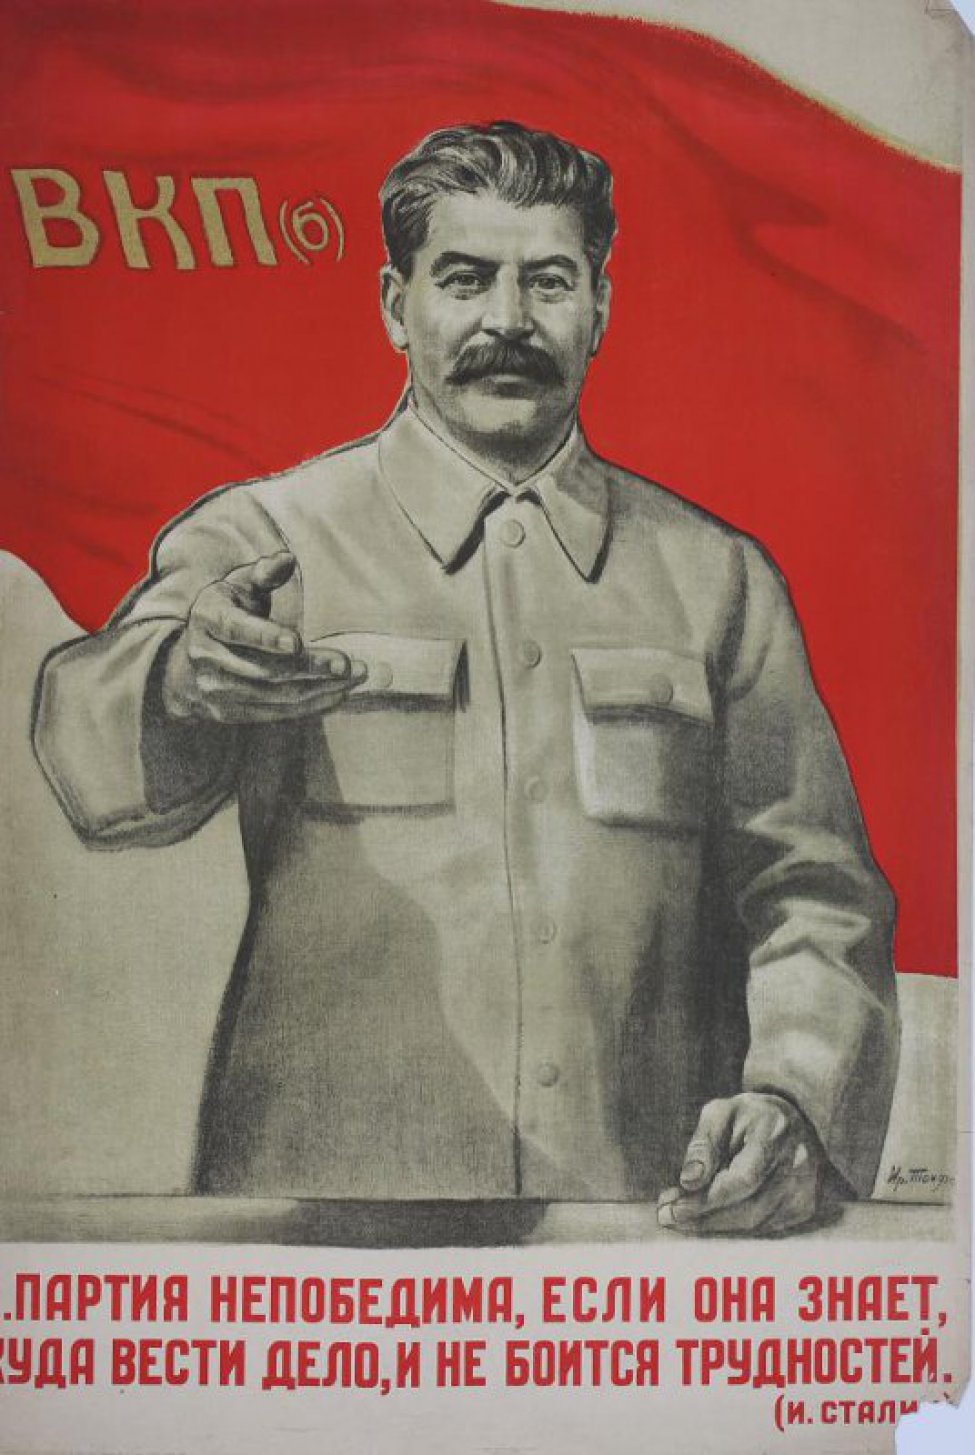 Изображена фигура т.Сталина по колено, правая рука согнута в локте, левая опущена. Вверху красное знамя с надписью: ВКП (б) внизу текст: Партия... трудностей".